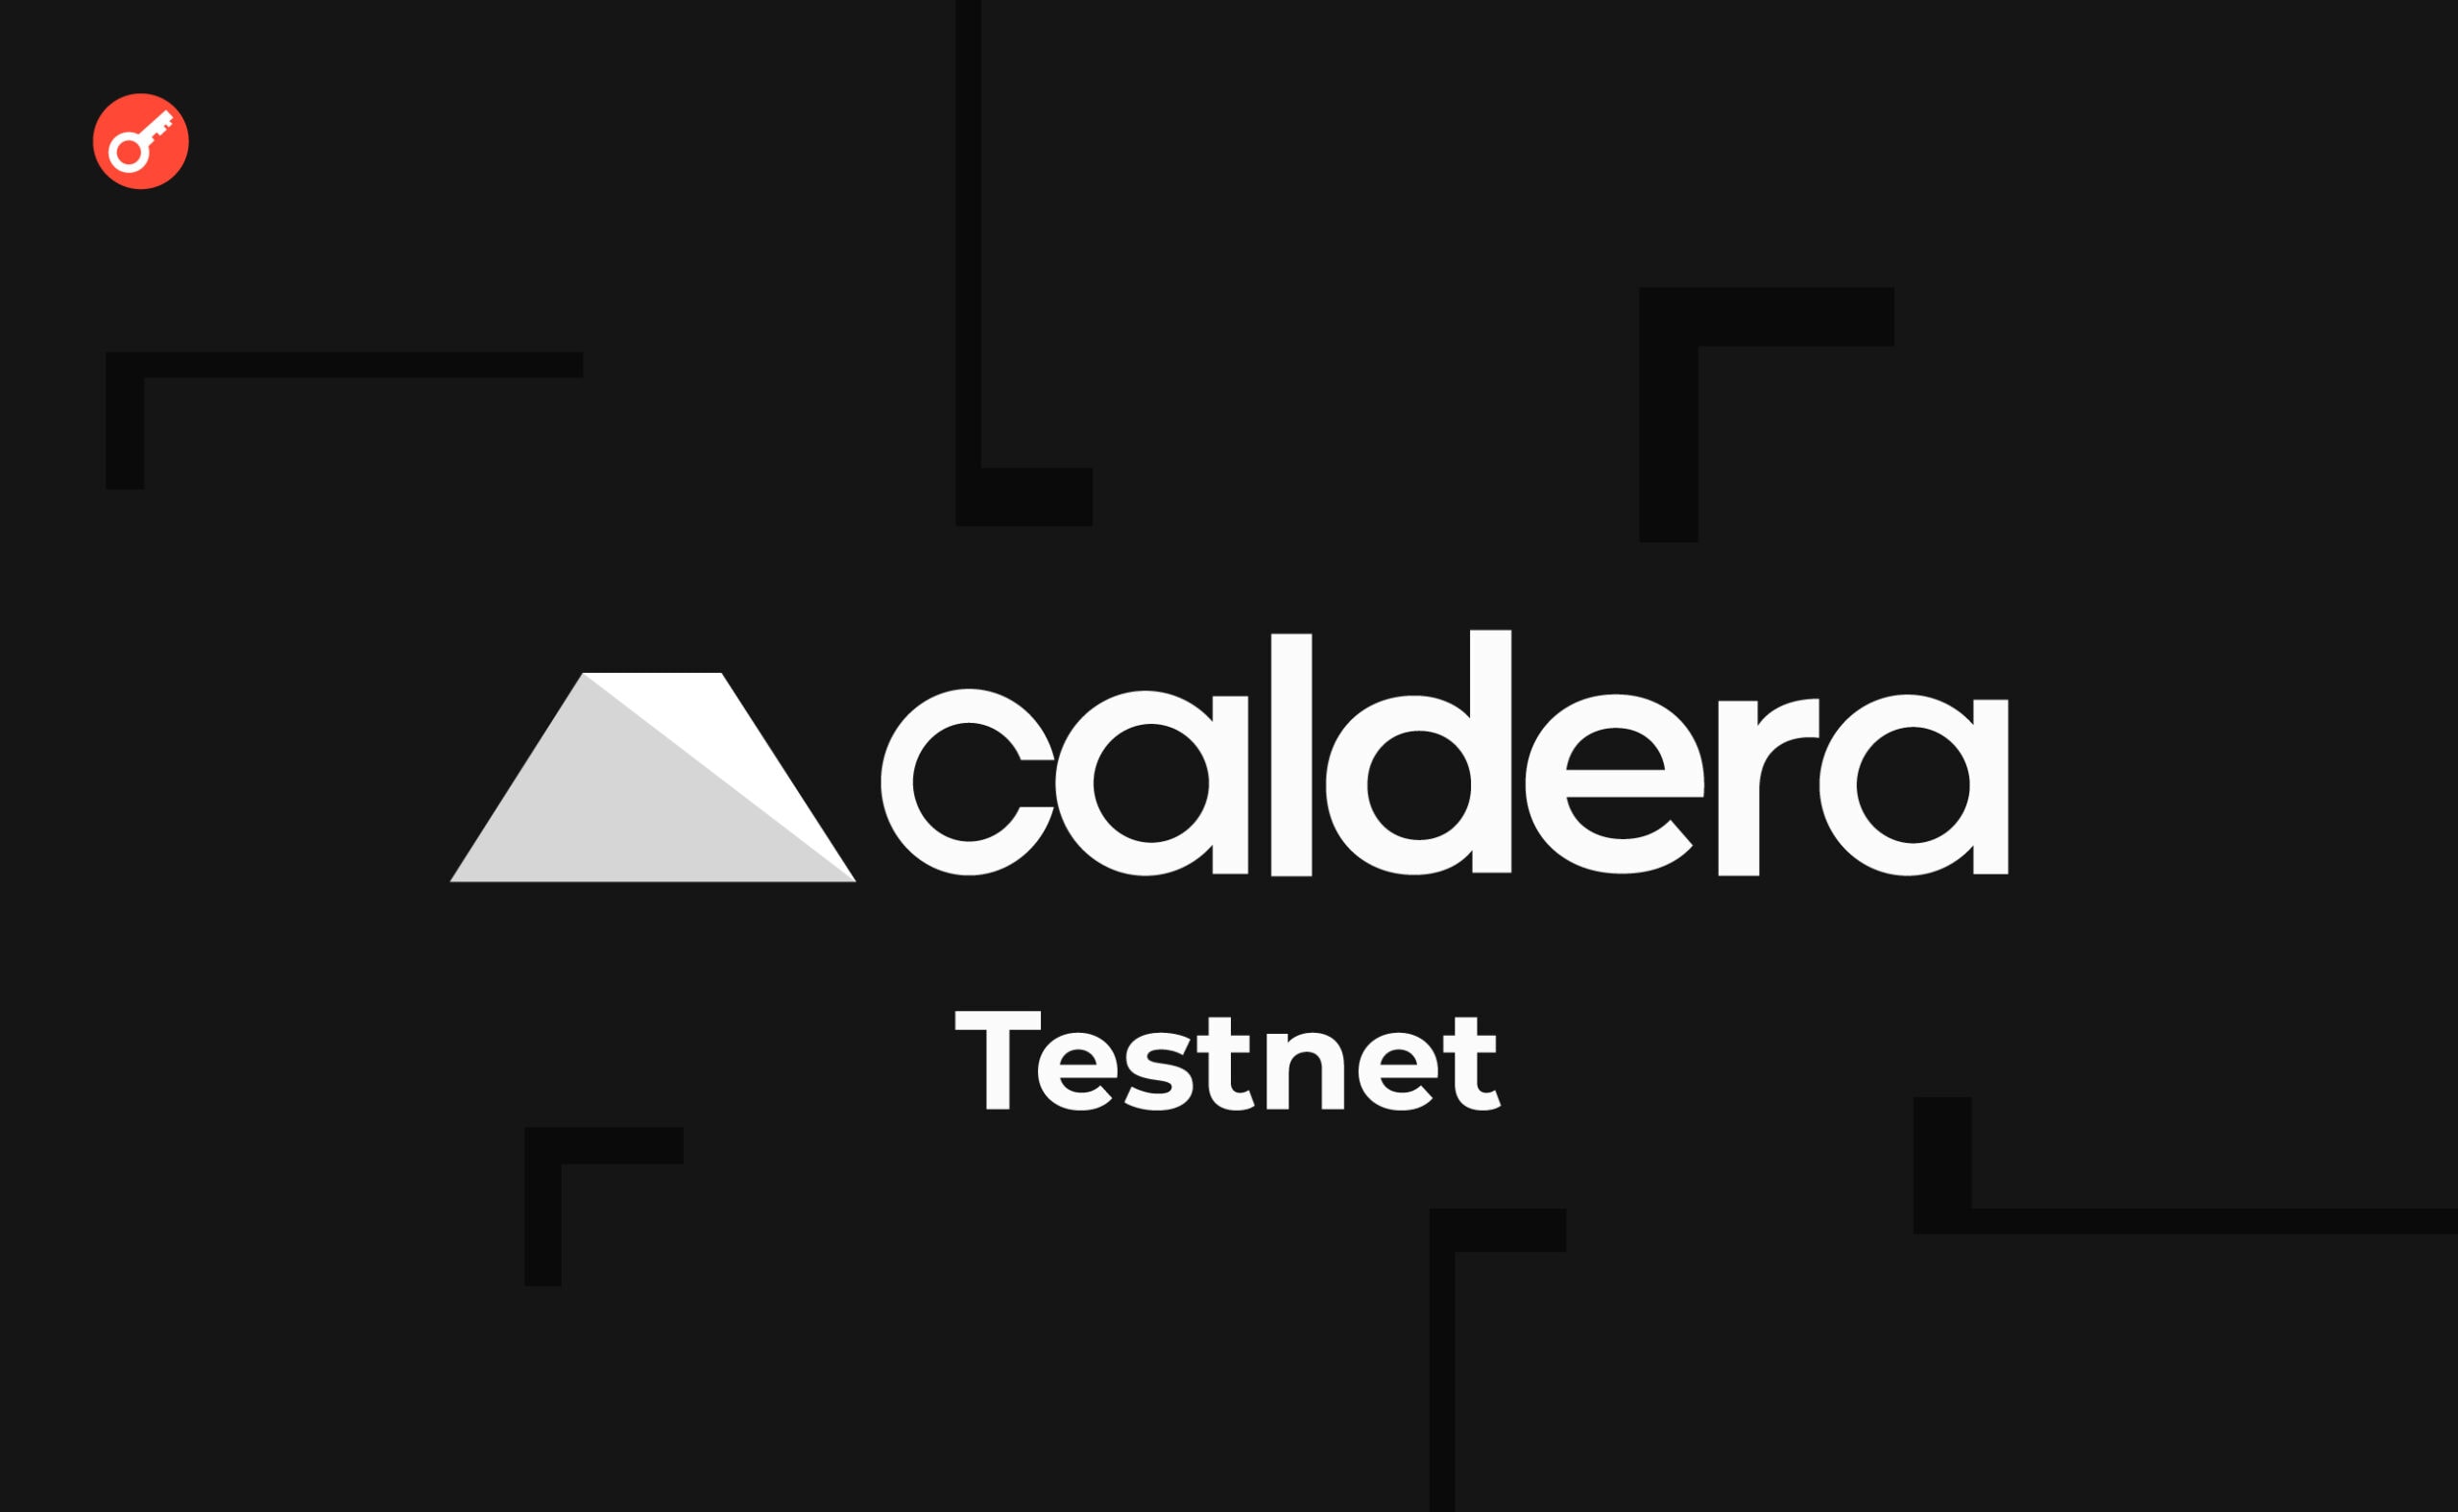 Caldera тестнет: разворачиваем блокчейн чтобы претендовать на возможный аирдроп. Заглавный коллаж статьи.